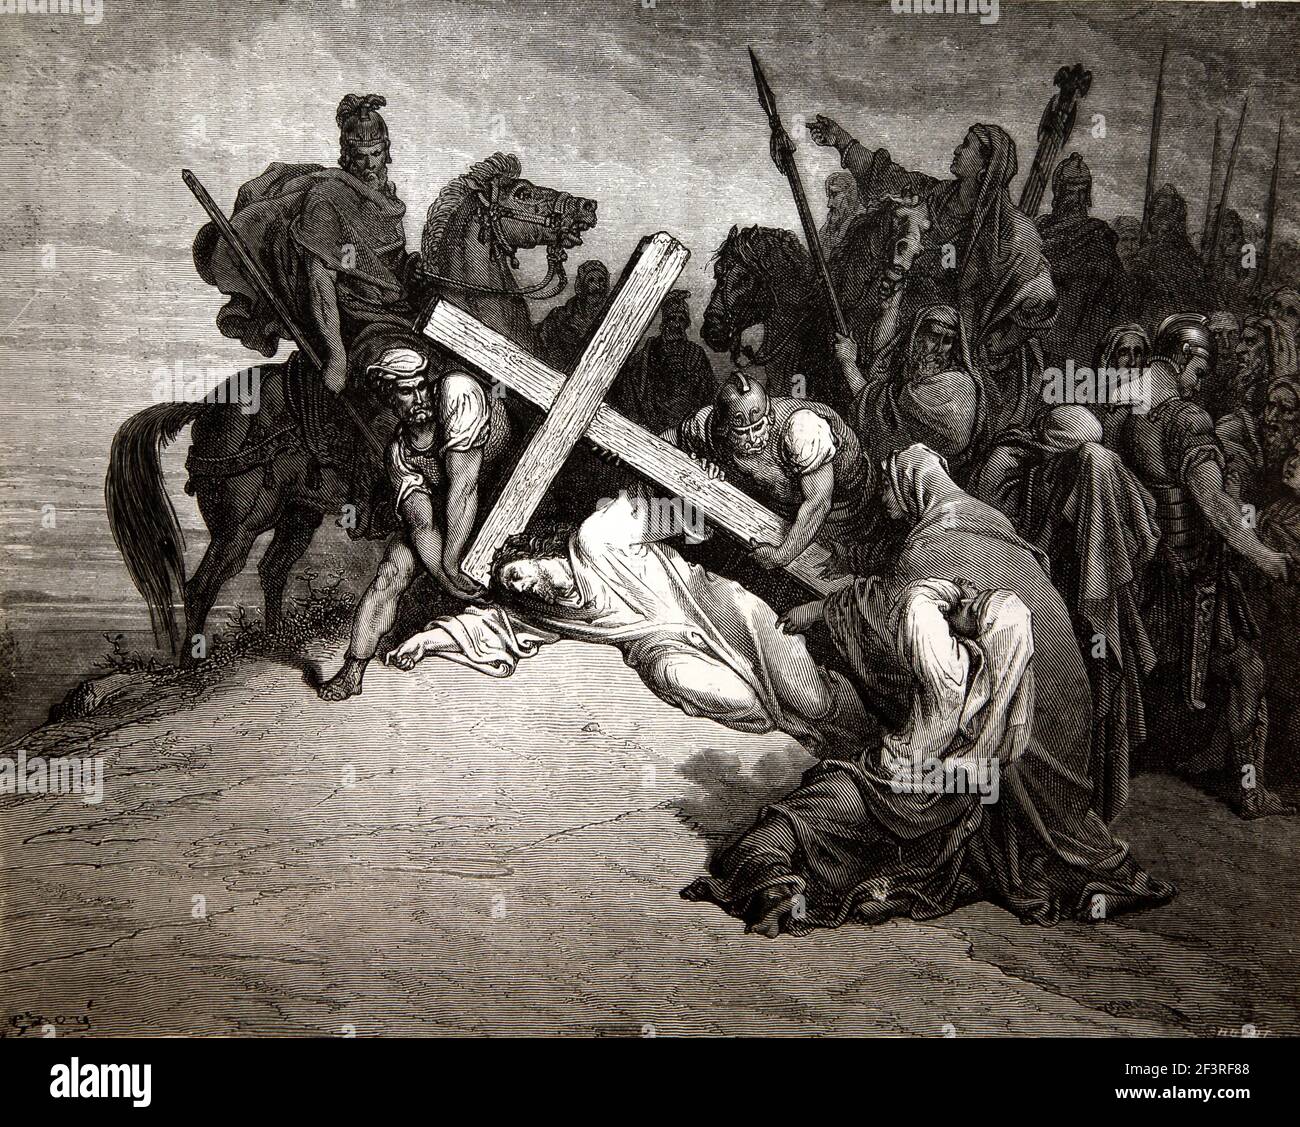 Historias Bíblicas - Ilustración de 'la llegada al Calvario' Jesús Cristo cae bajo la Cruz del Nuevo Testamento Mateo 27:33-34 Foto de stock